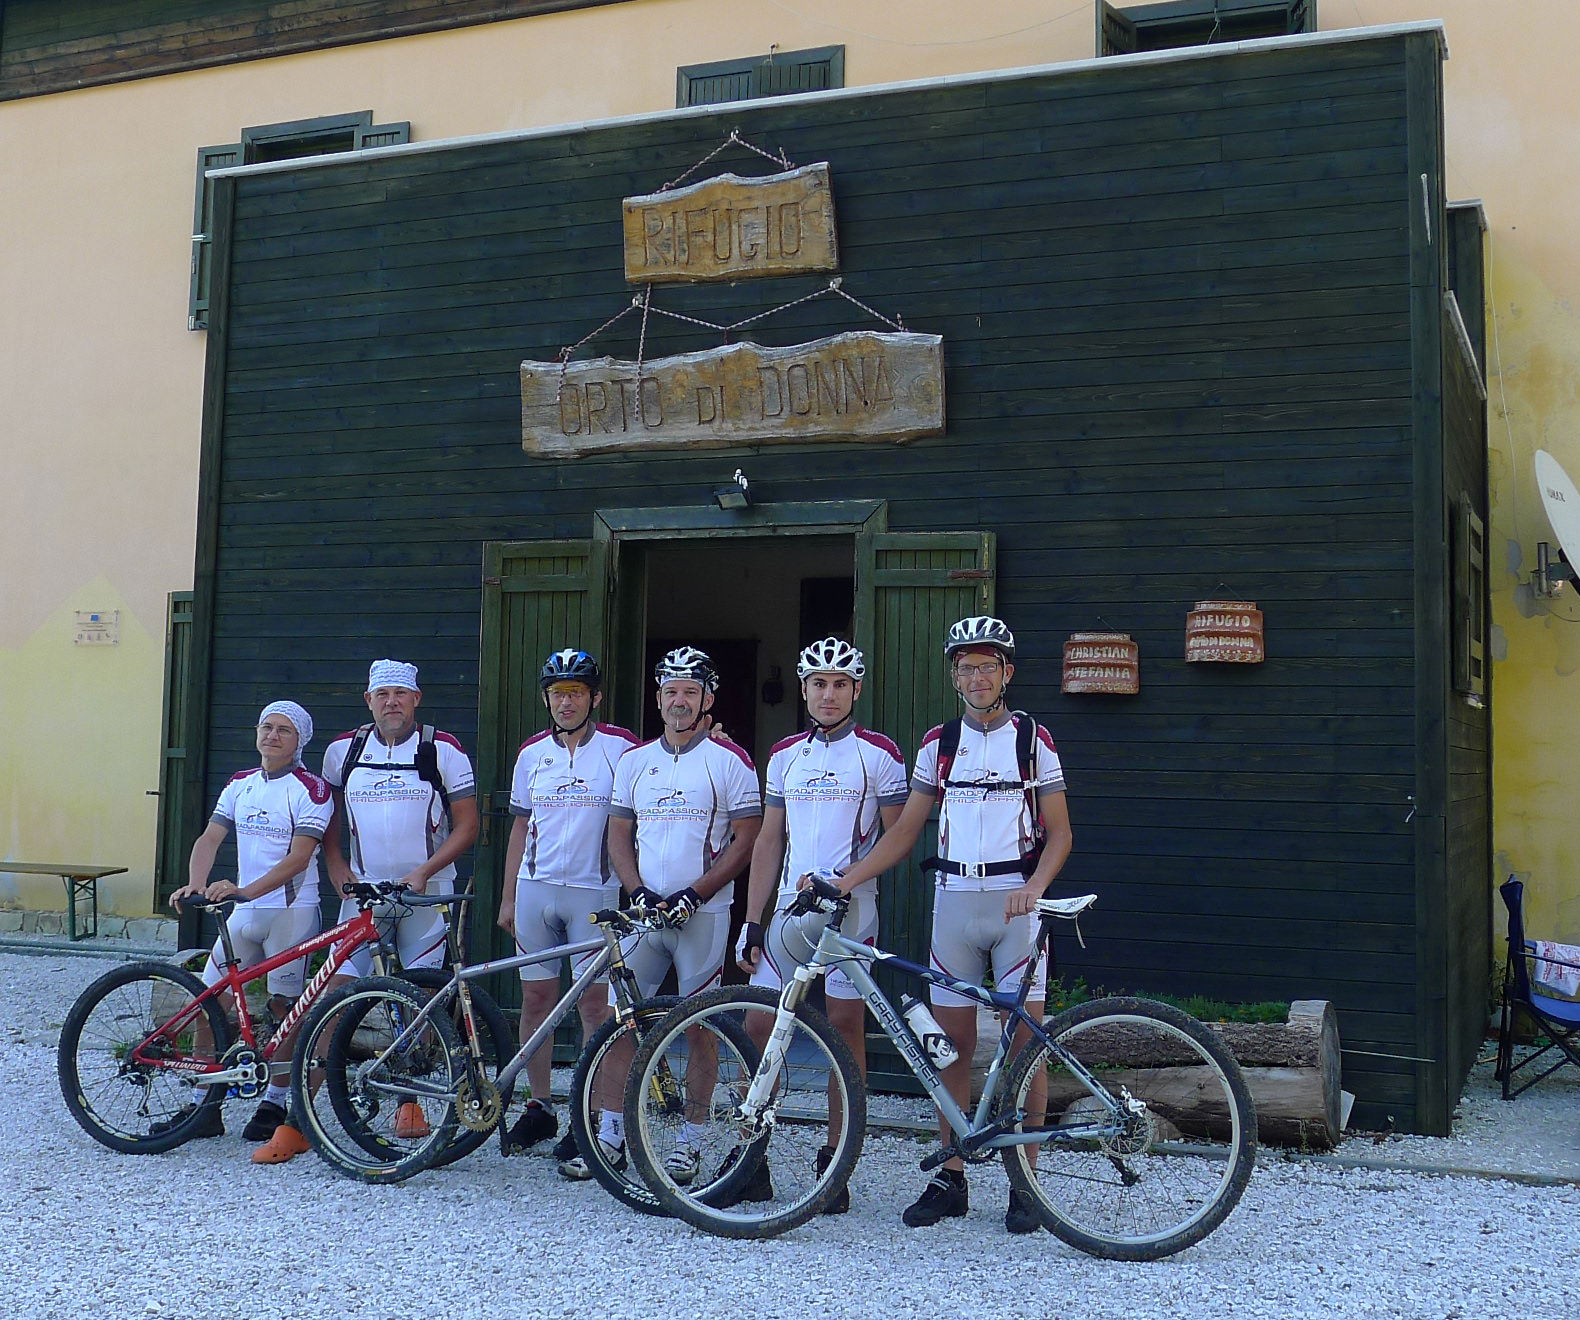 Successo per l’escursione “Dal mare all’Appennino” del gruppo ciclistico Apuane Extreme